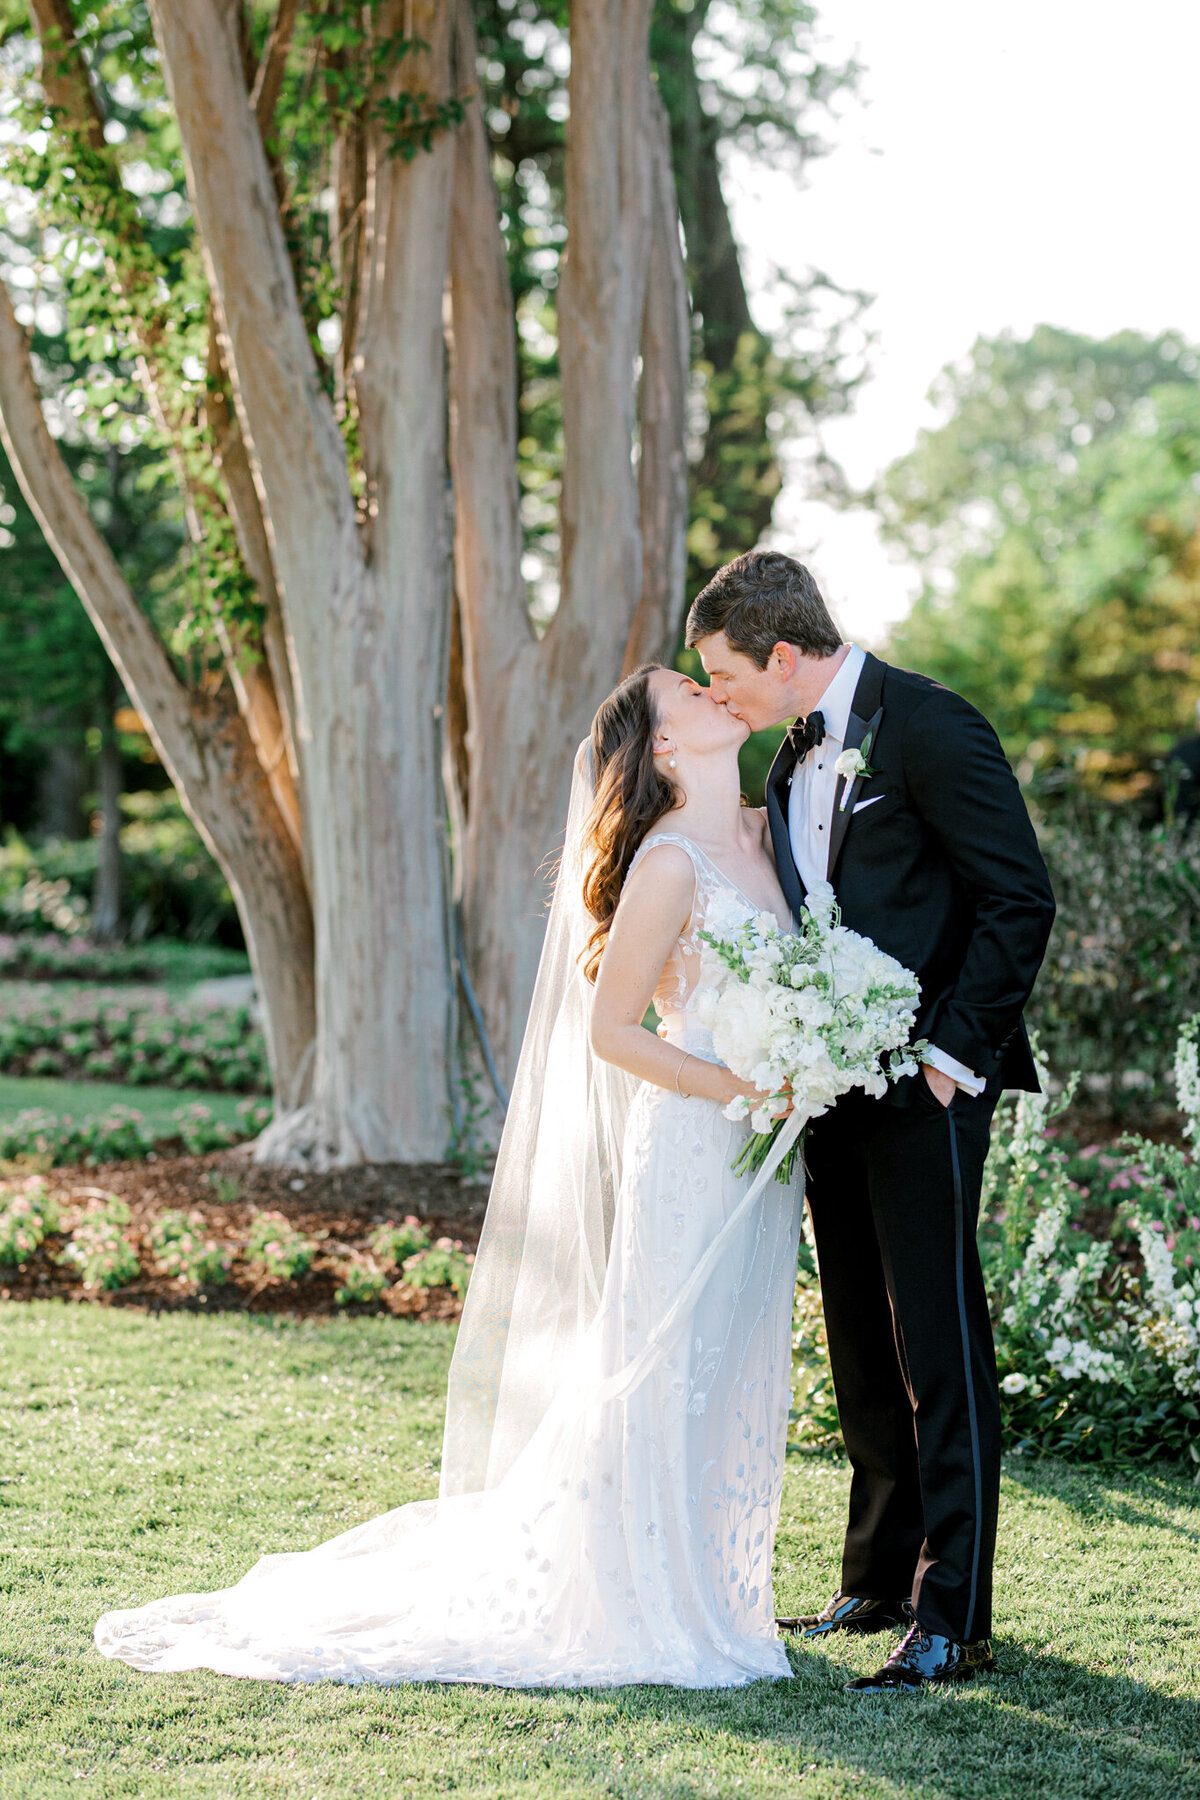 Gena & Matt's Wedding at the Dallas Arboretum | Dallas Wedding Photographer | Sami Kathryn Photography-5